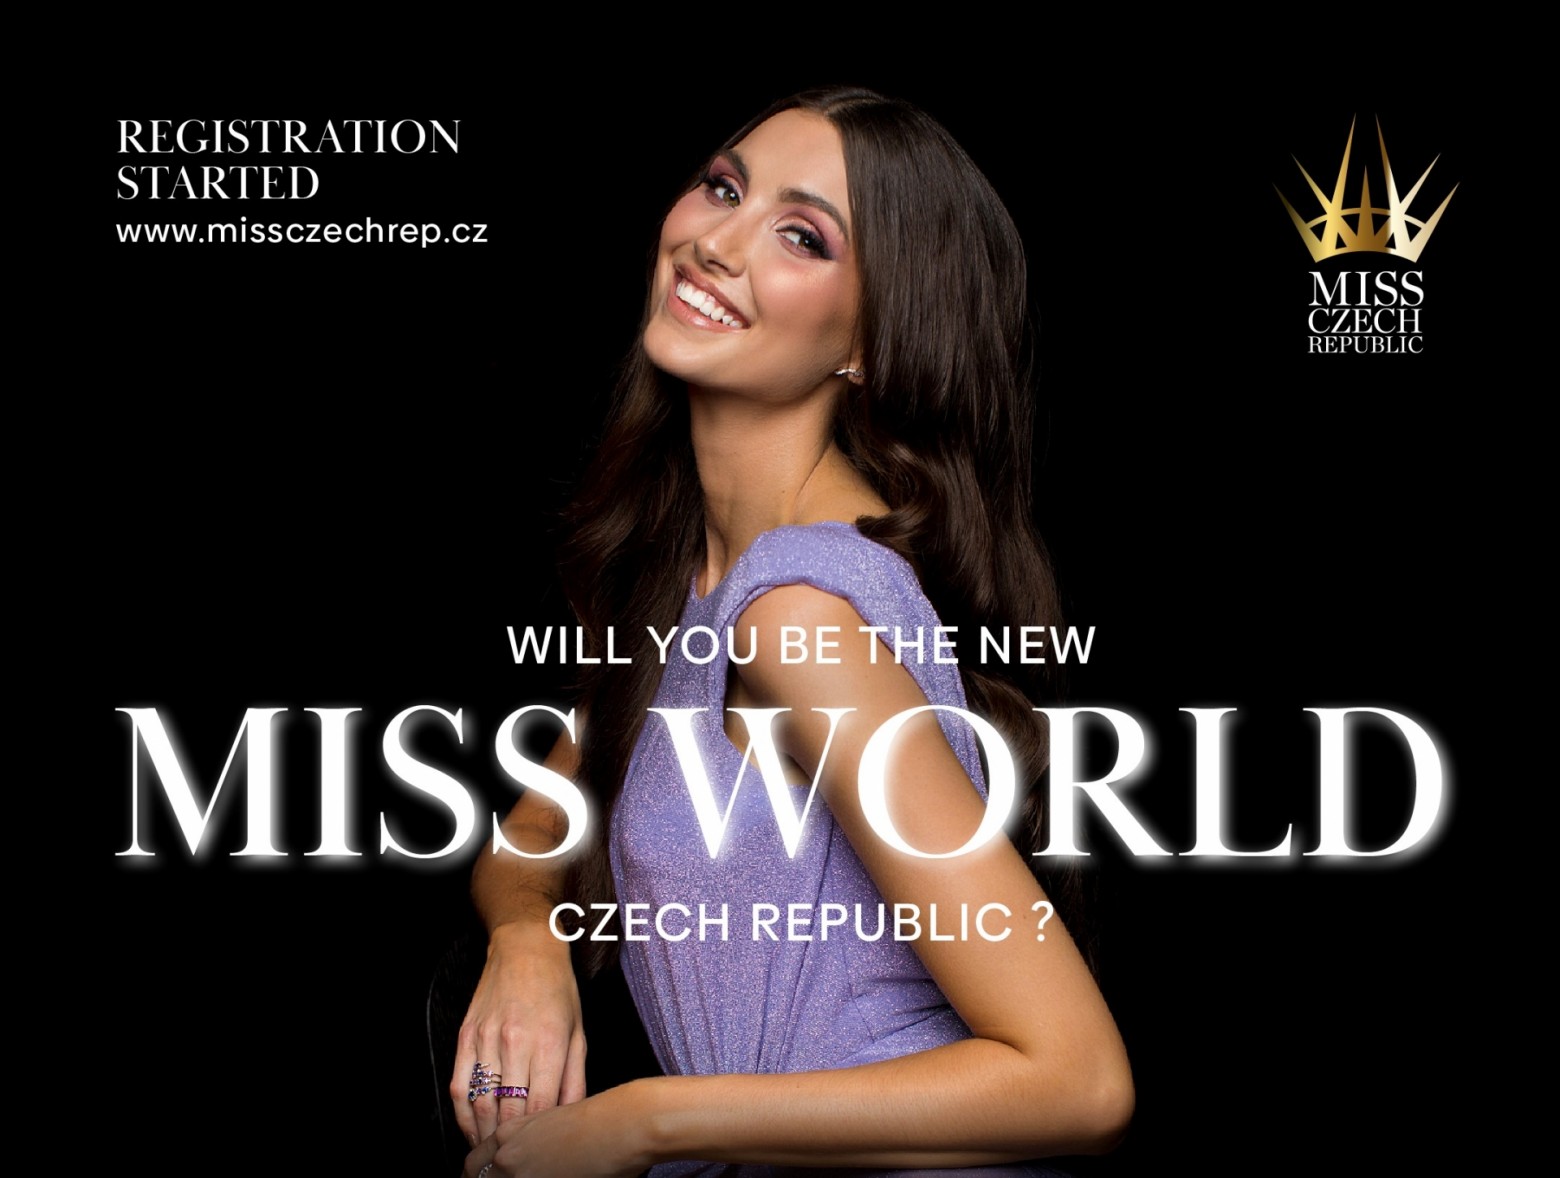 Spuštěna registrace MISS CZECH REPUBLIC 2022